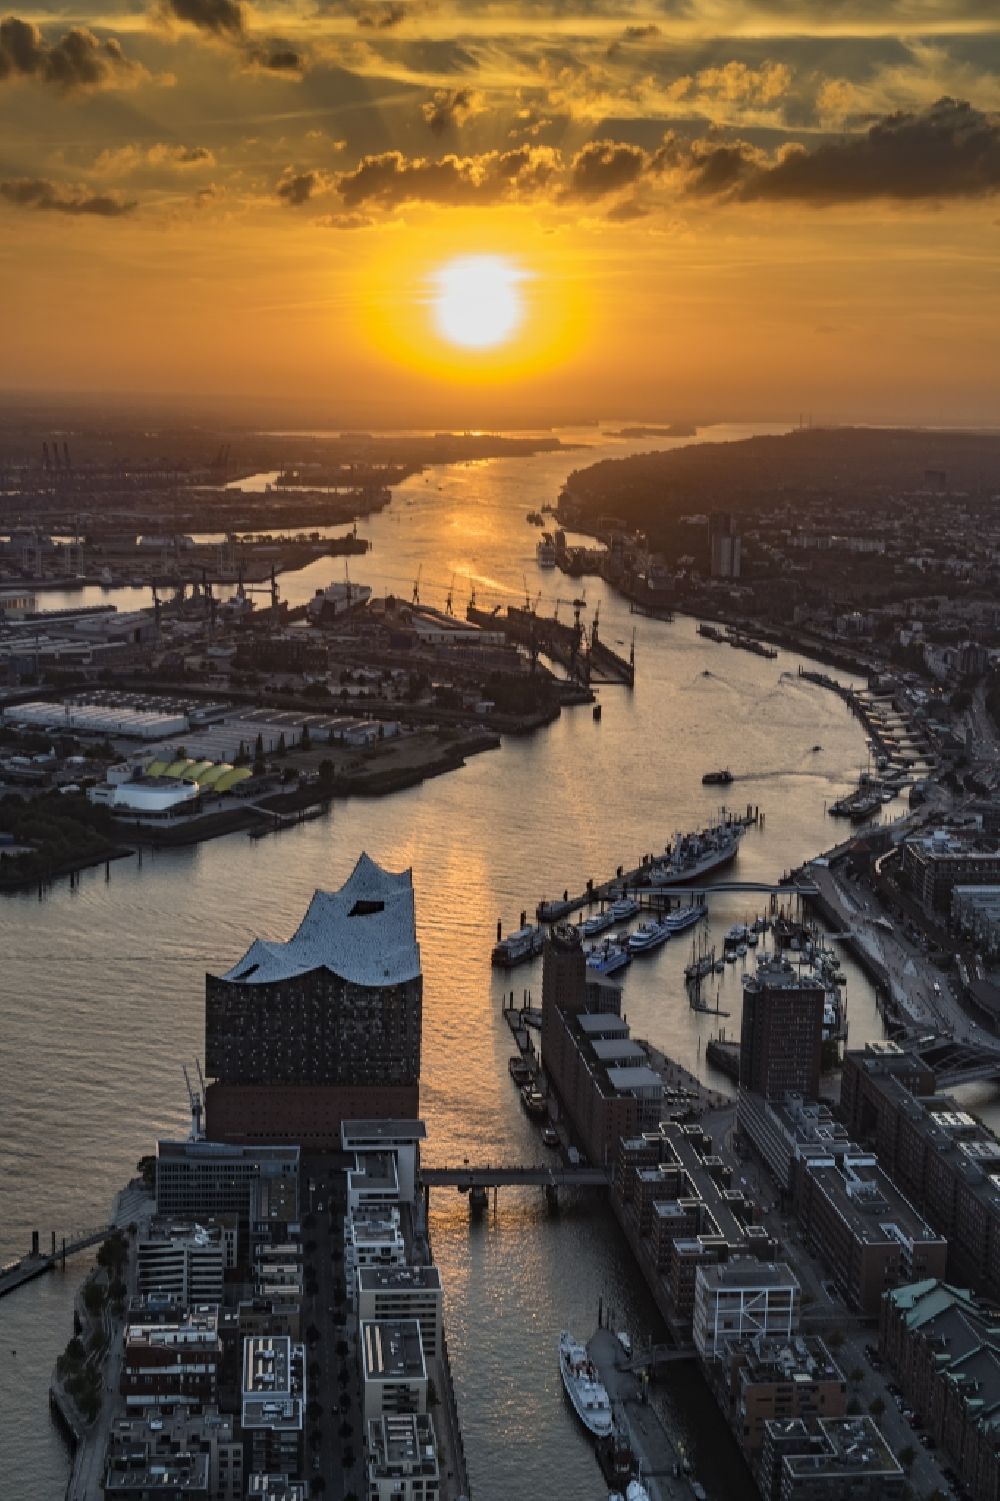 Luftbild Hamburg - Konzerthaus Elbphilharmonie mit Speicherstadt im Sonnenuntergang in Hamburg